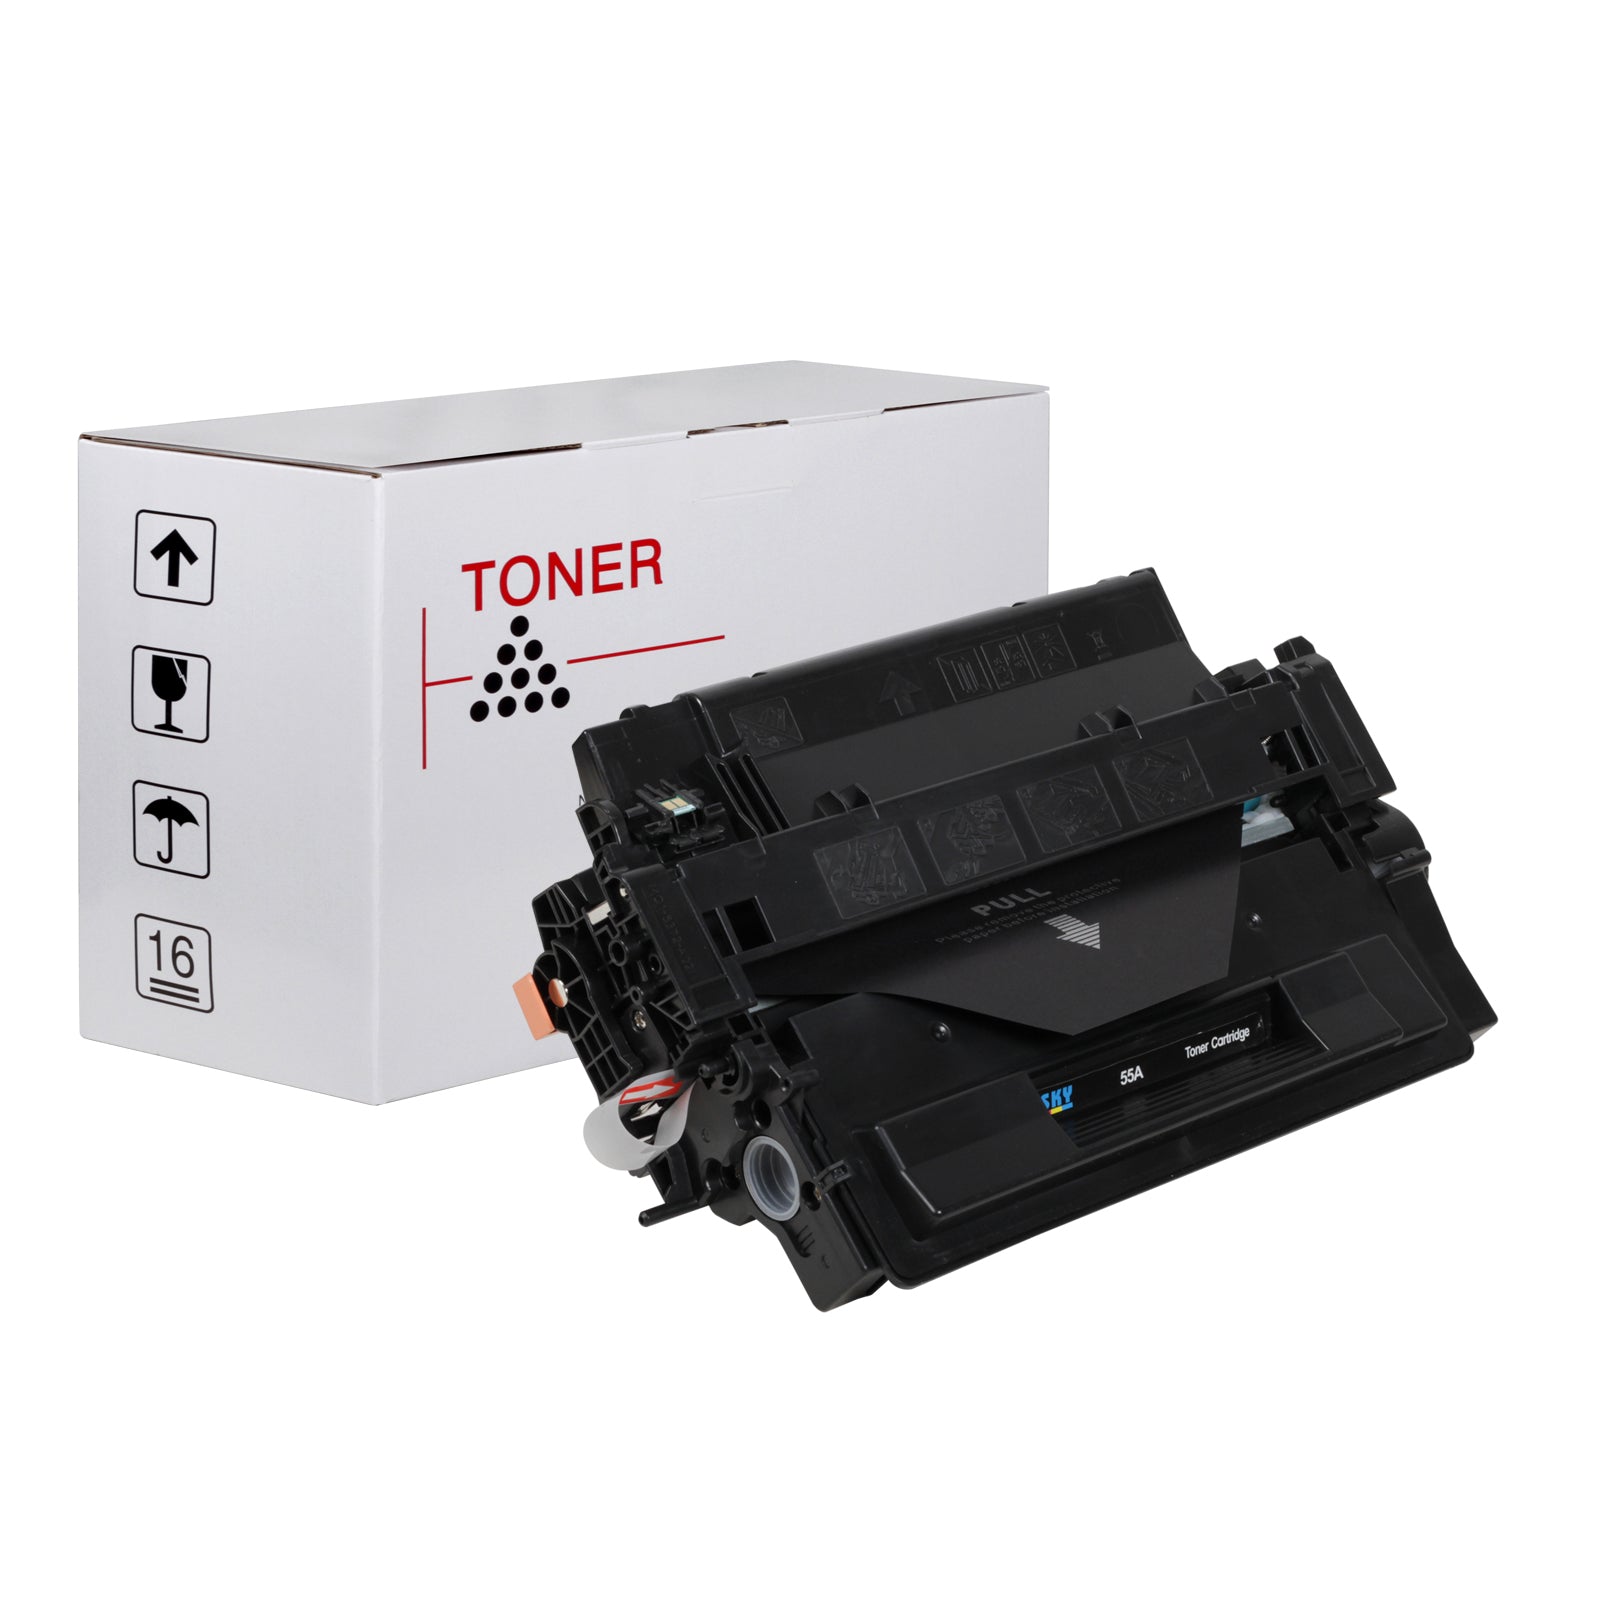 SKY 55A Toner Cartridge CE255A for  P3015 P3015d P3015dn P3015x LBP6750